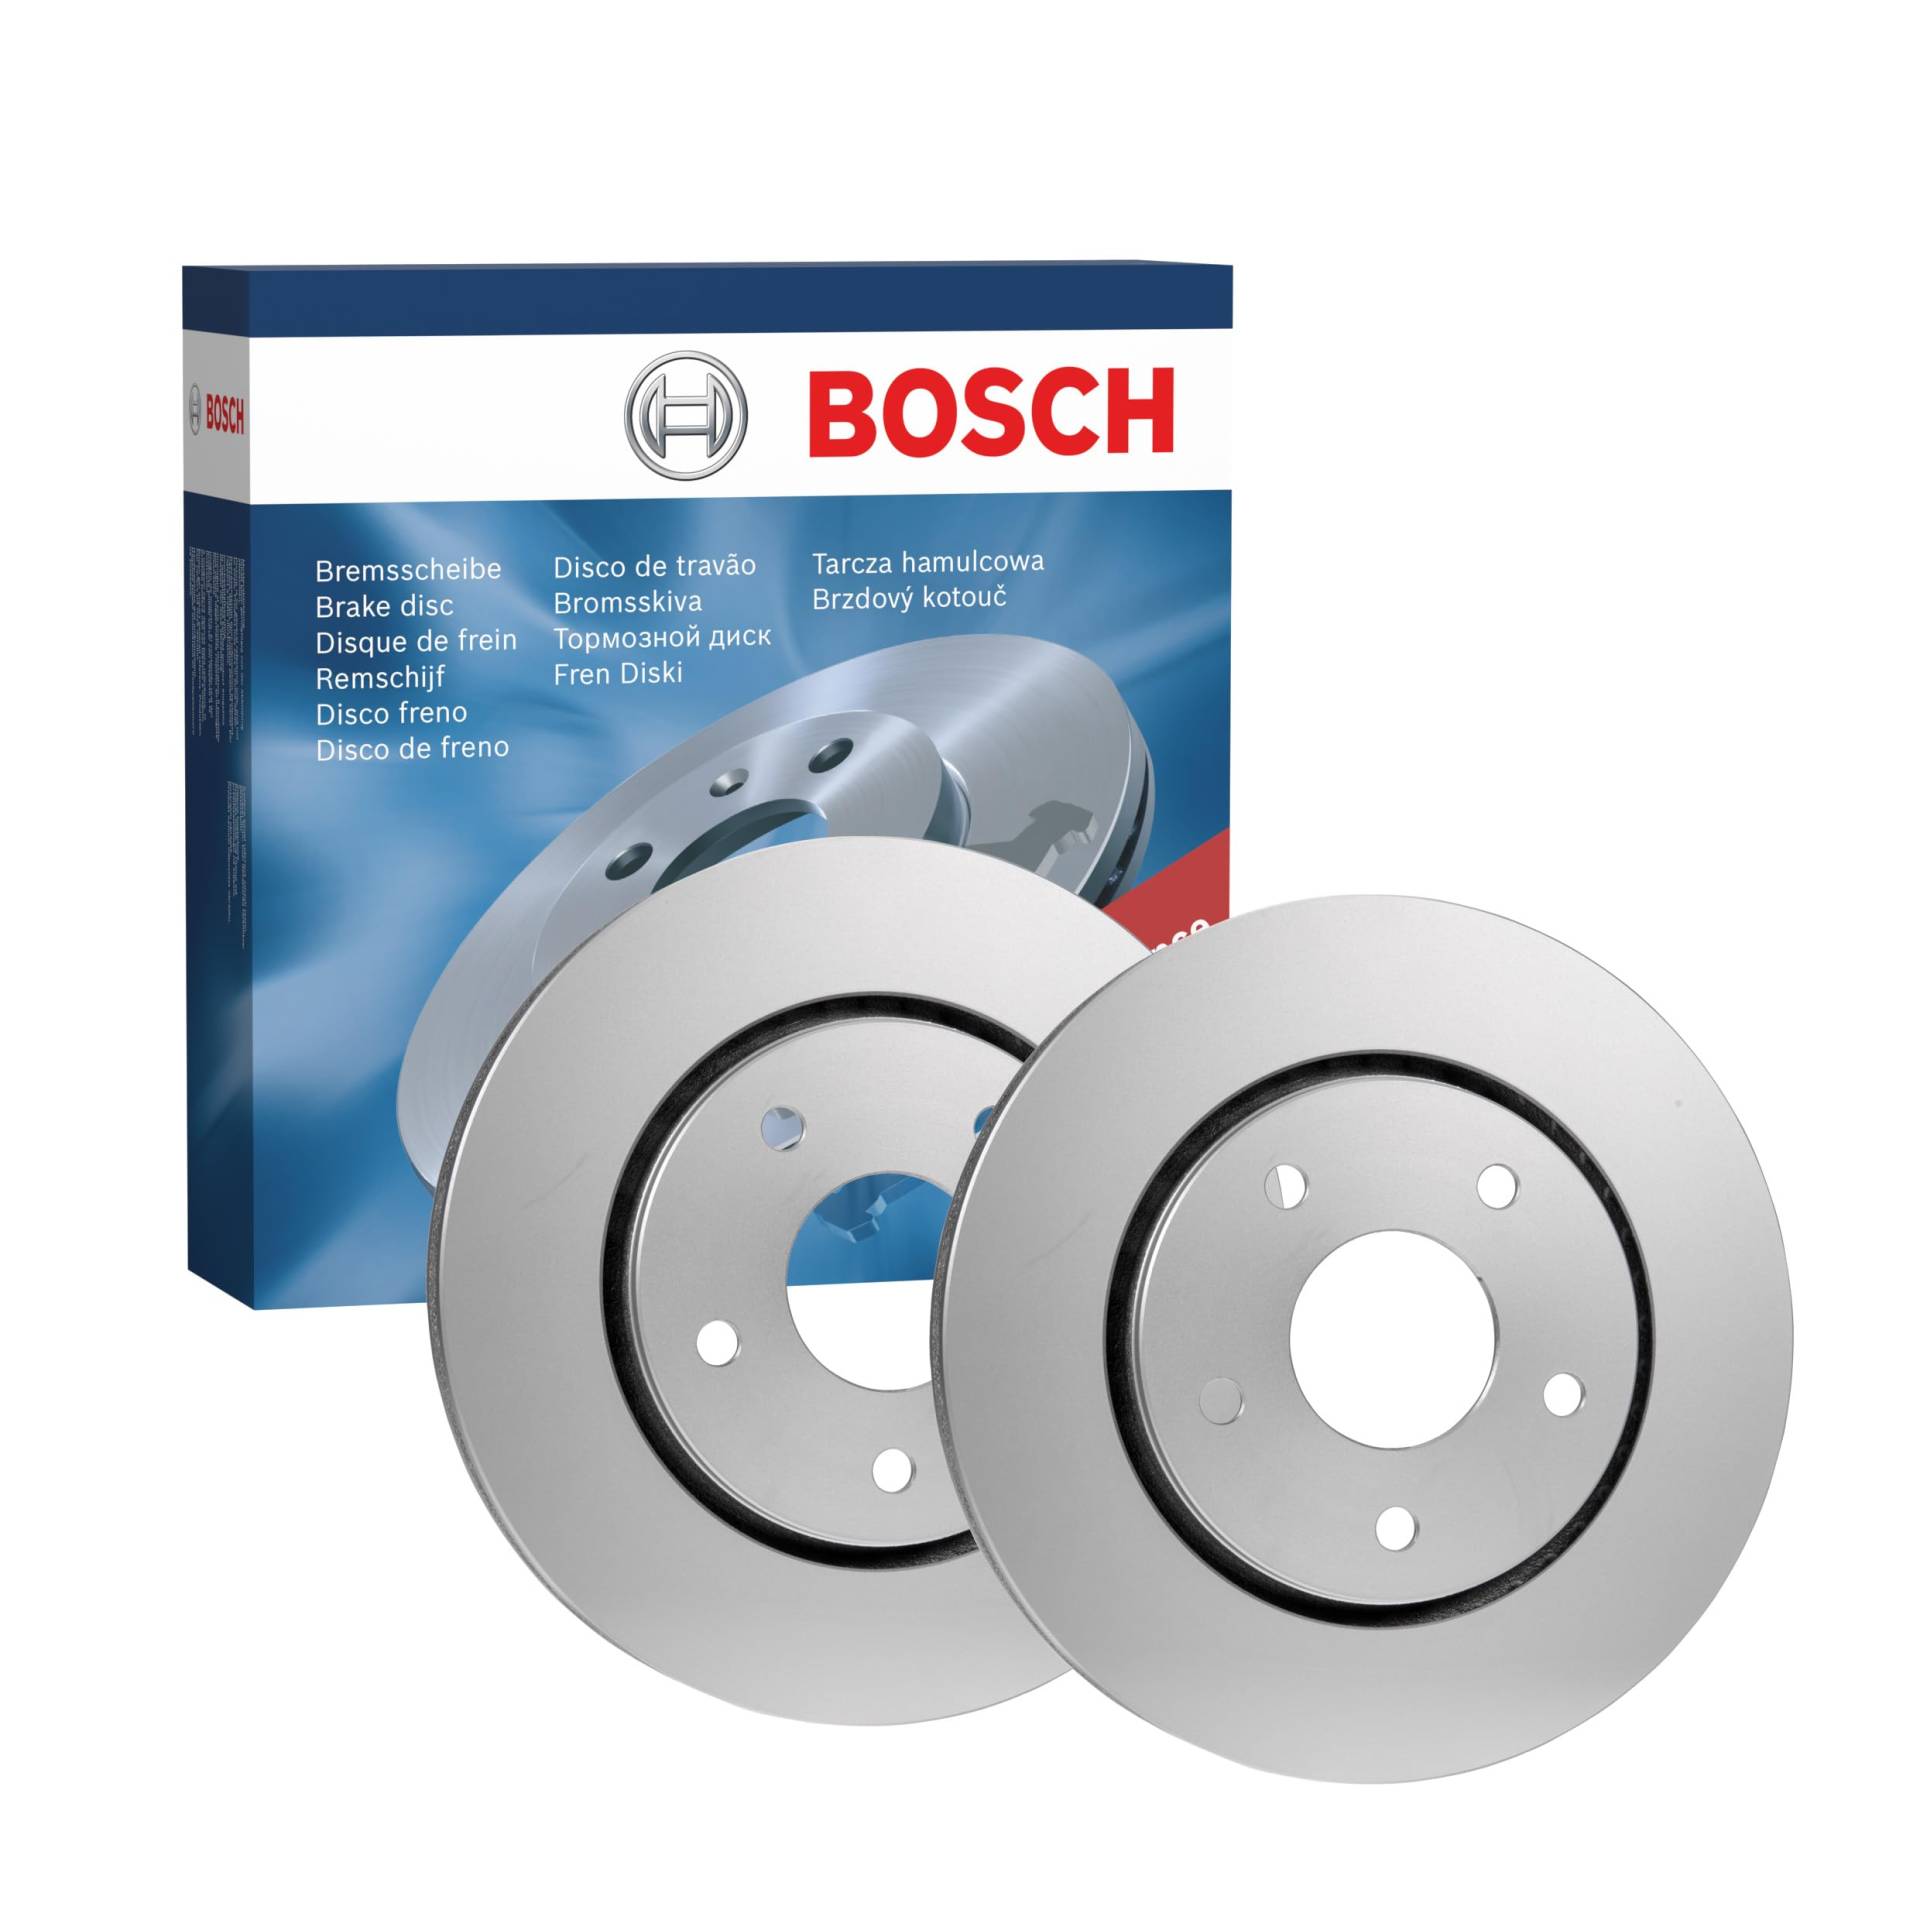 Bosch BD2018 Bremsscheiben - Vorderachse - ECE-R90 Zertifizierung - zwei Bremsscheiben pro Set von Bosch Automotive